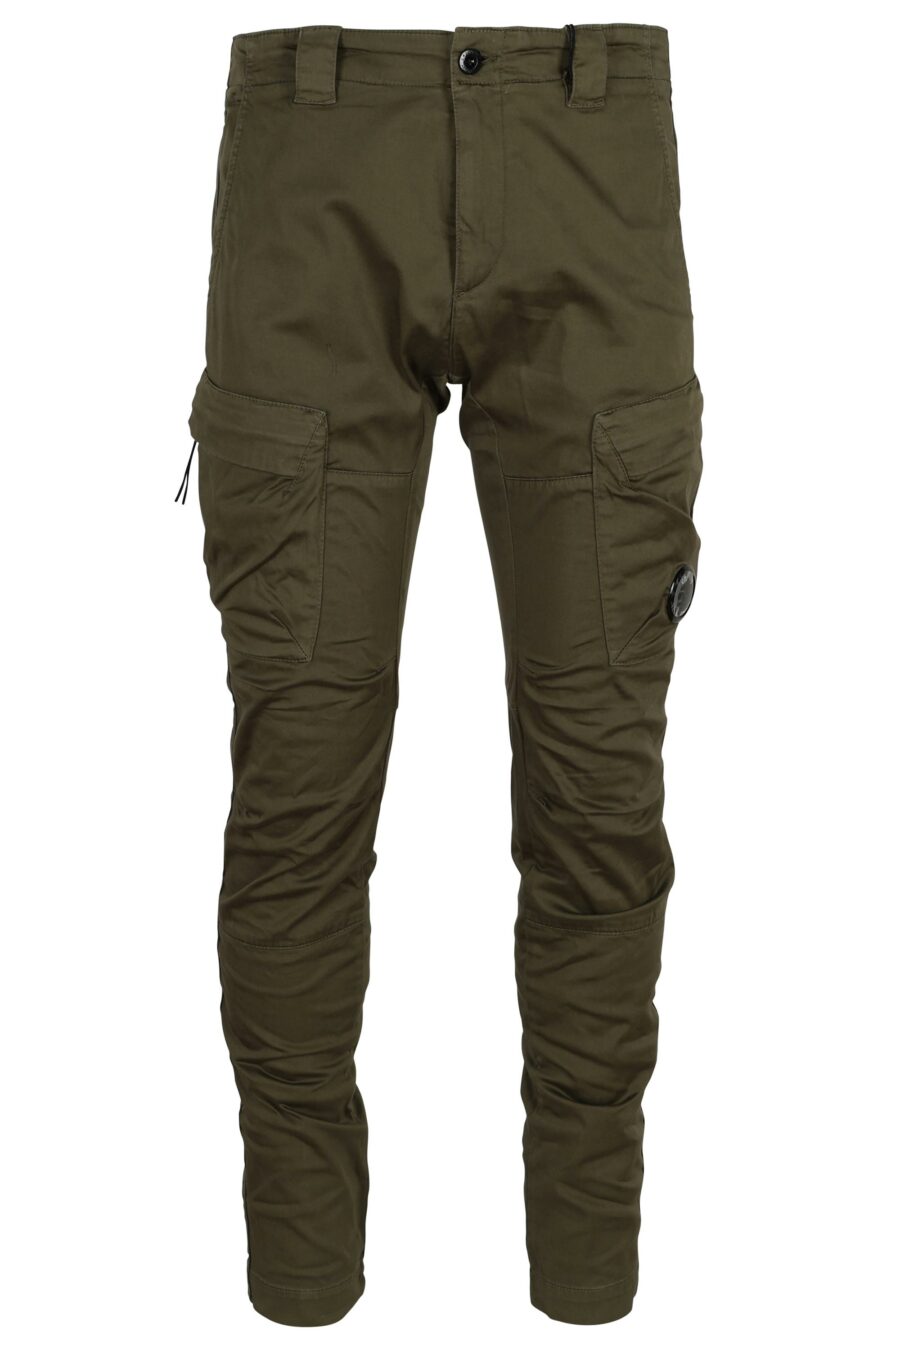 Pantalón verde militar estilo cargo con logo lente - 7620943722628